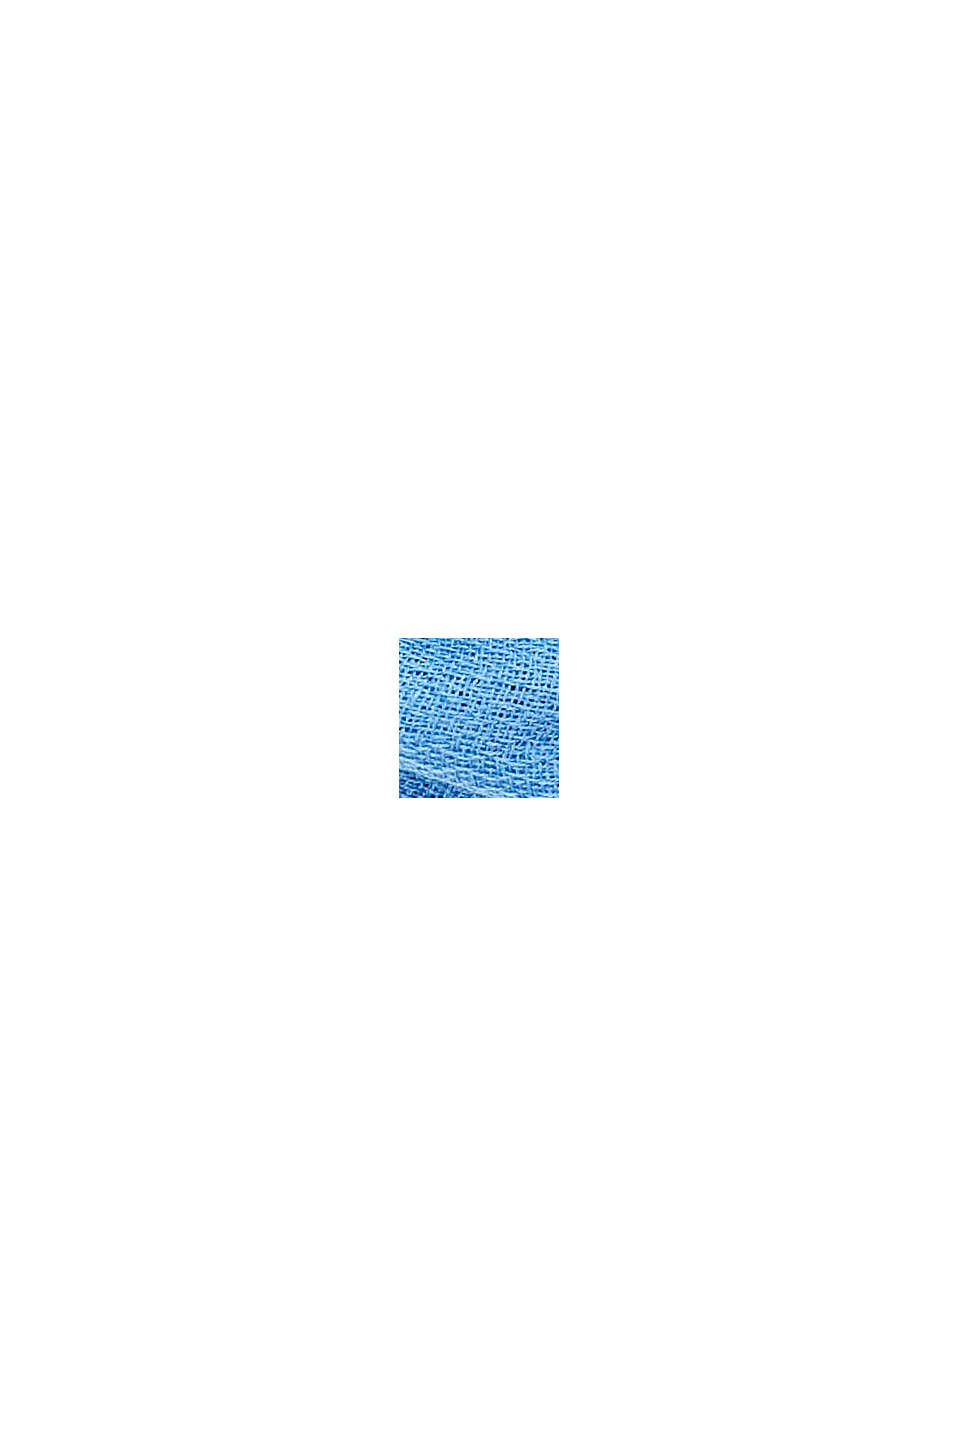 Af genanvendte materialer: Ensfarvet, vævet halstørklæde i loop-design, GREY BLUE, swatch